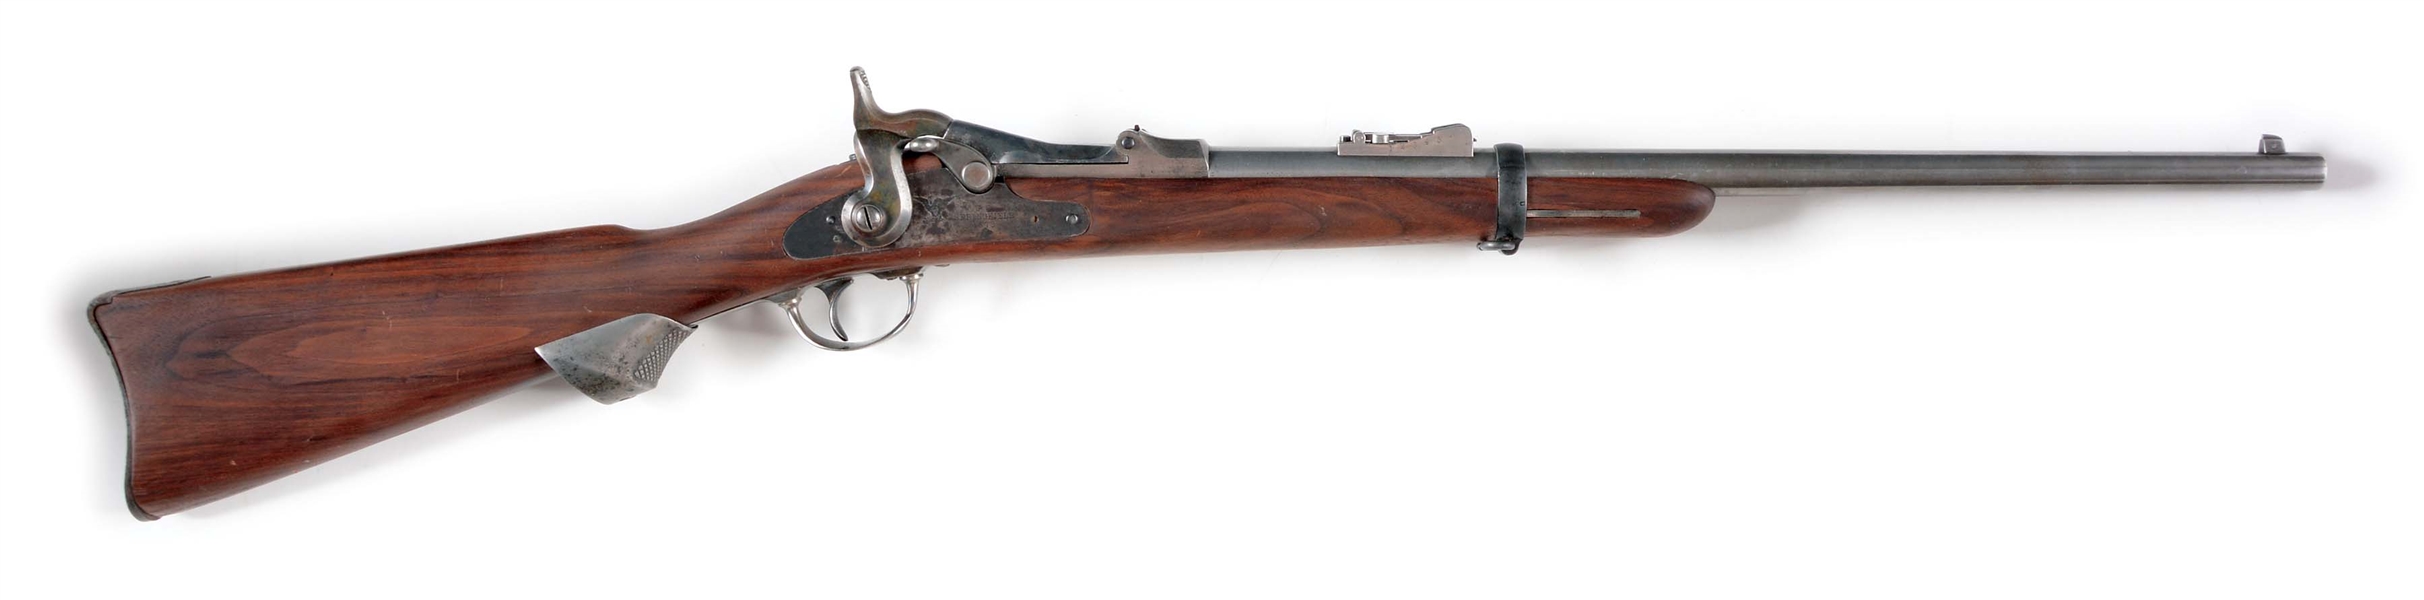 1873 springfield carbine barrel